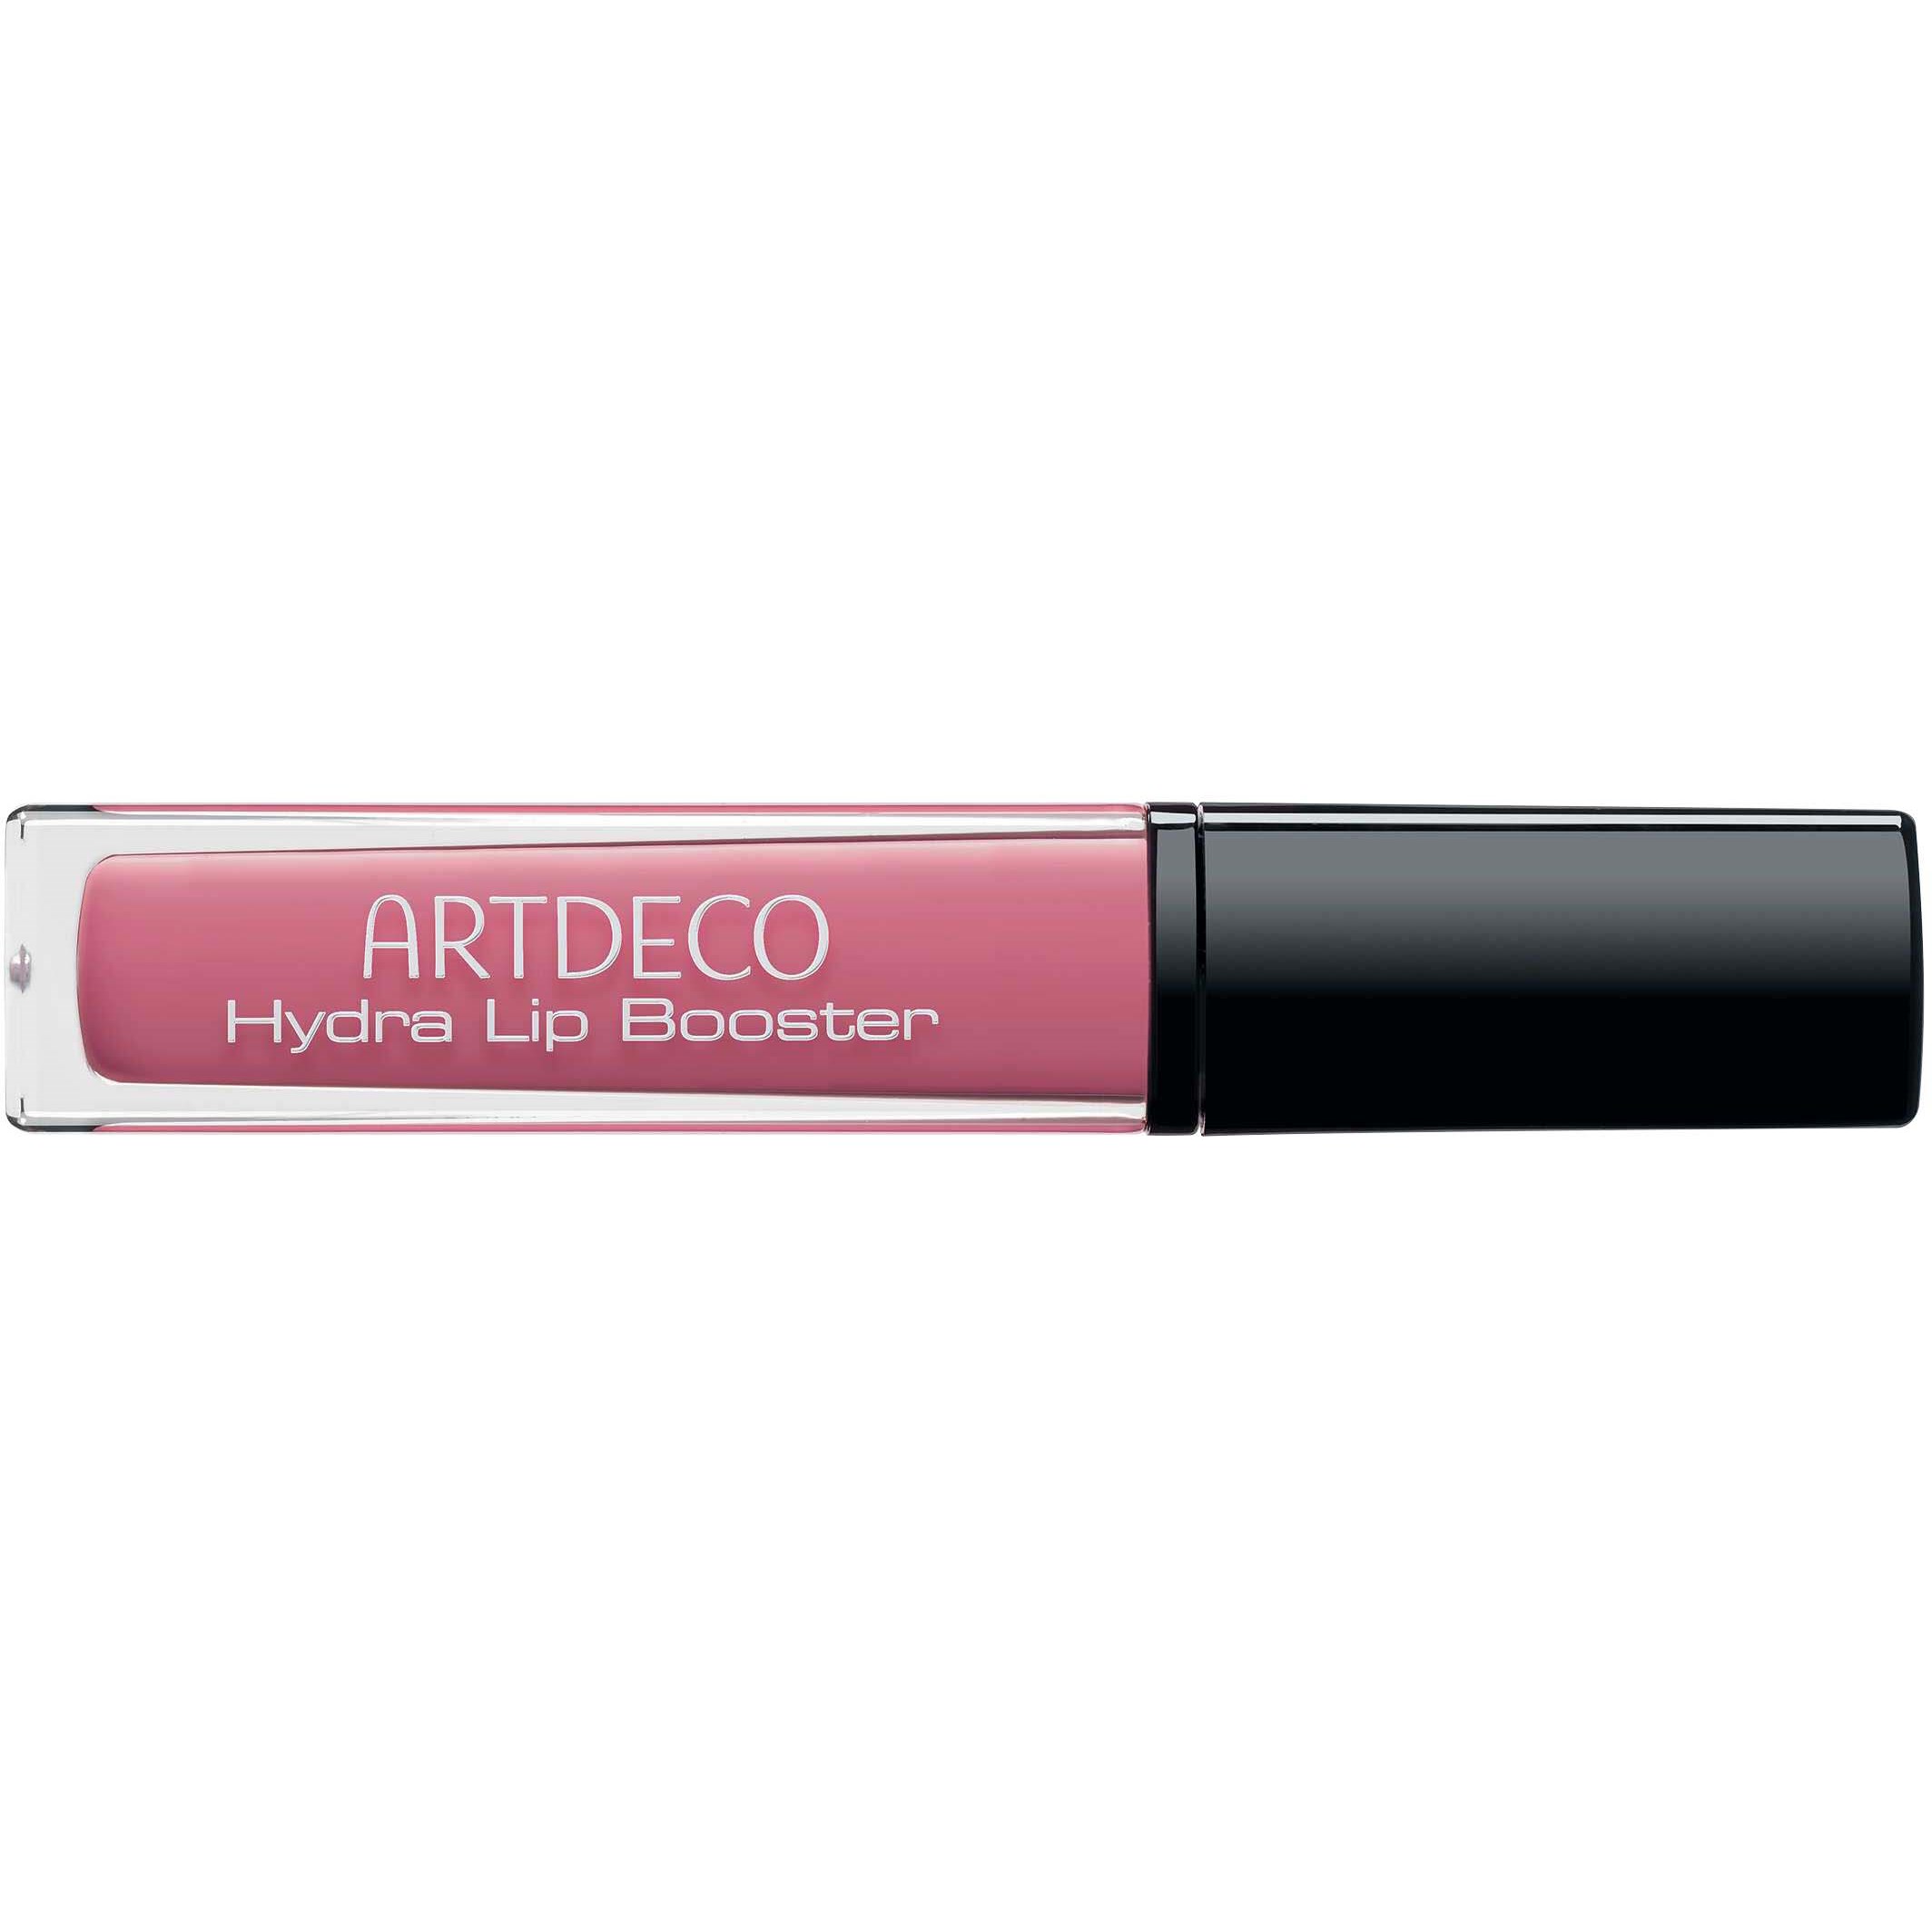 Bilde av Artdeco Hydra Lip Booster 38 Translucent Rose